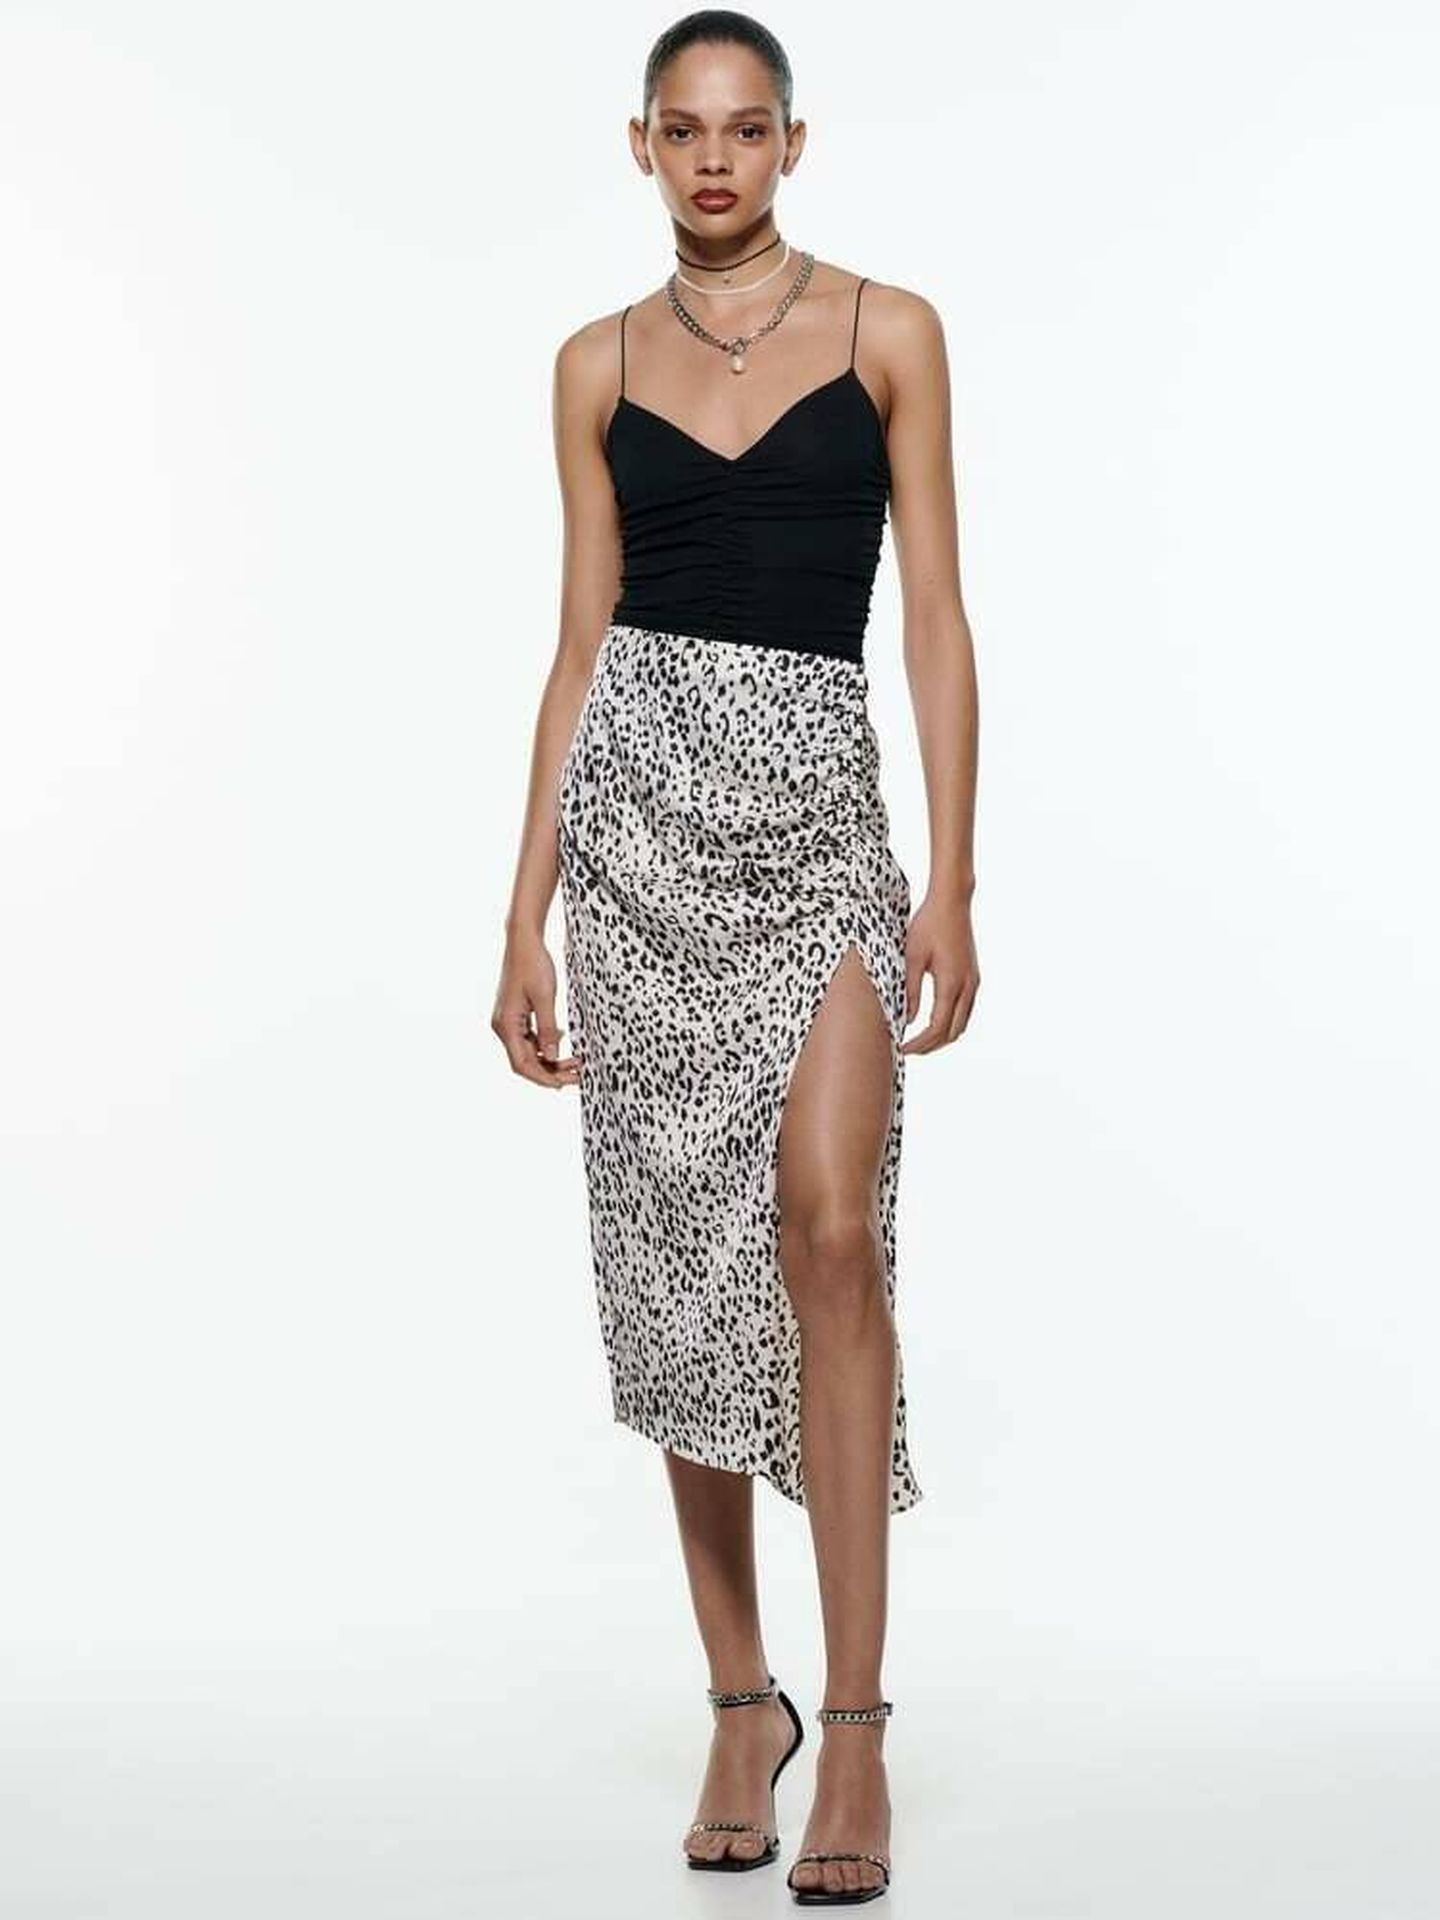 Absoluto negocio Vacío 5 faldas de Zara a Mango para vestir a la moda por menos de 30 euros